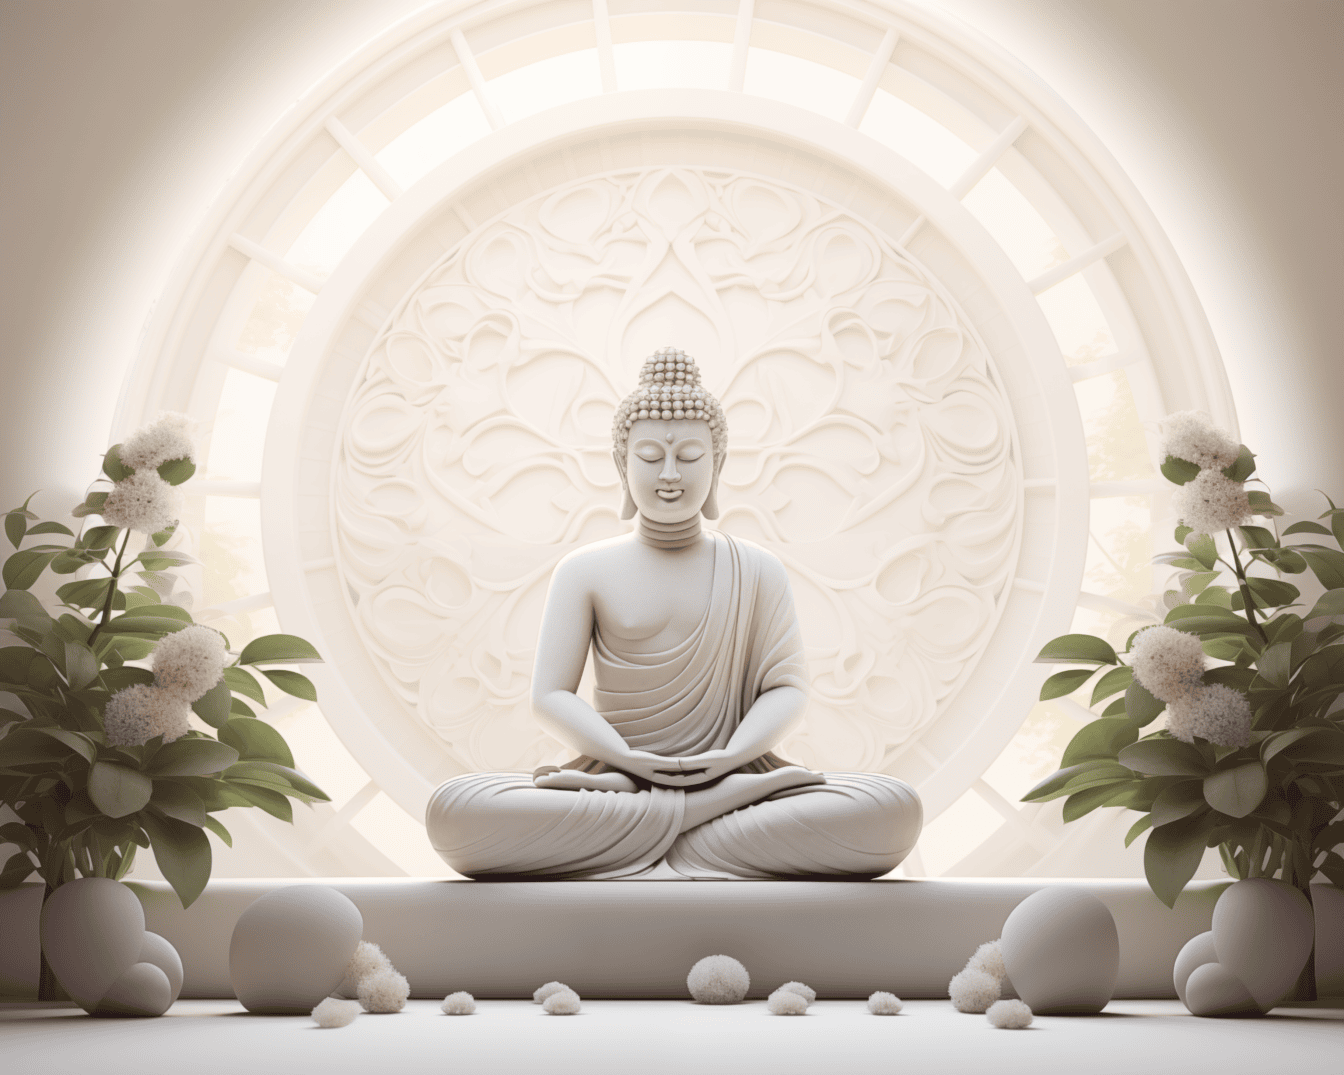 Magnifique statue blanche d’un Bouddha assis en position de lotus et méditant à côté de fleurs blanches